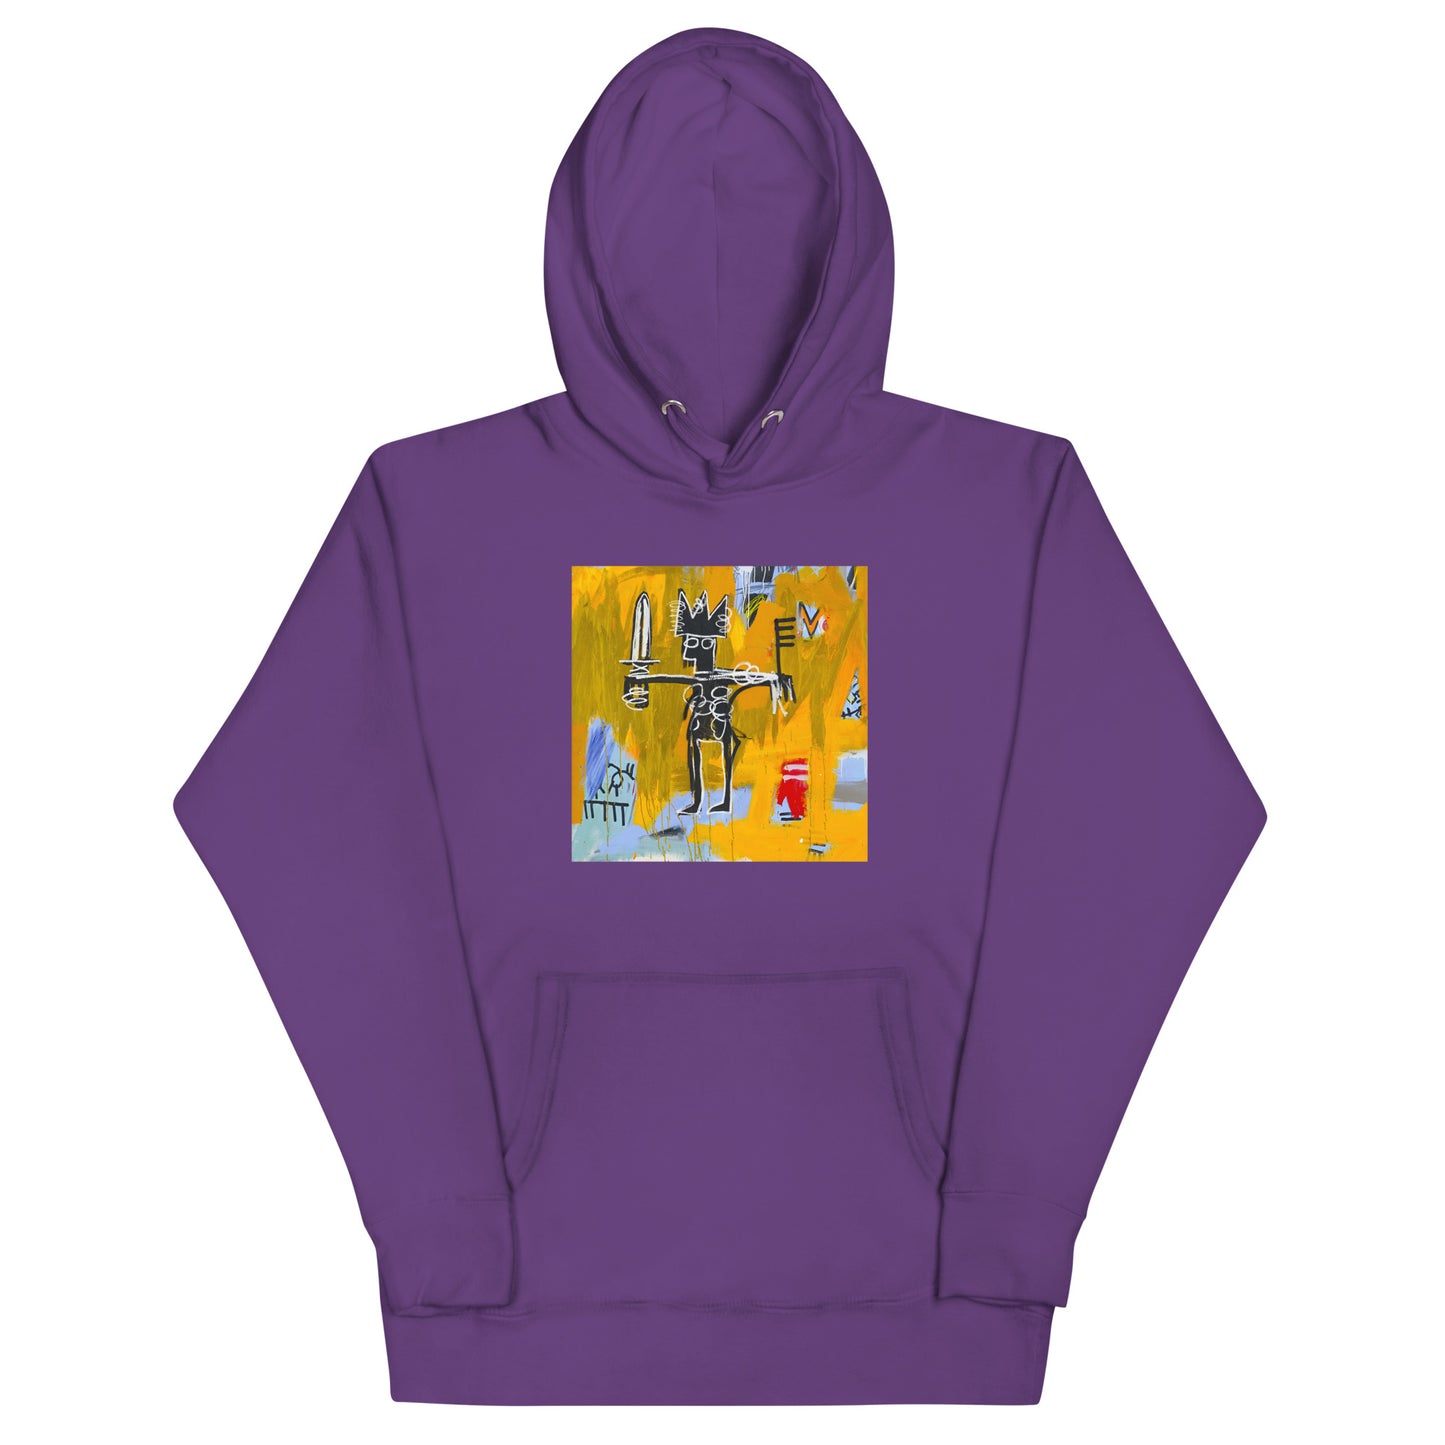 Jean-Michel Basquiat "Julius Caesar on Gold" Artwork Printed Premium Streetwear Sweatshirt Hoodie Purple